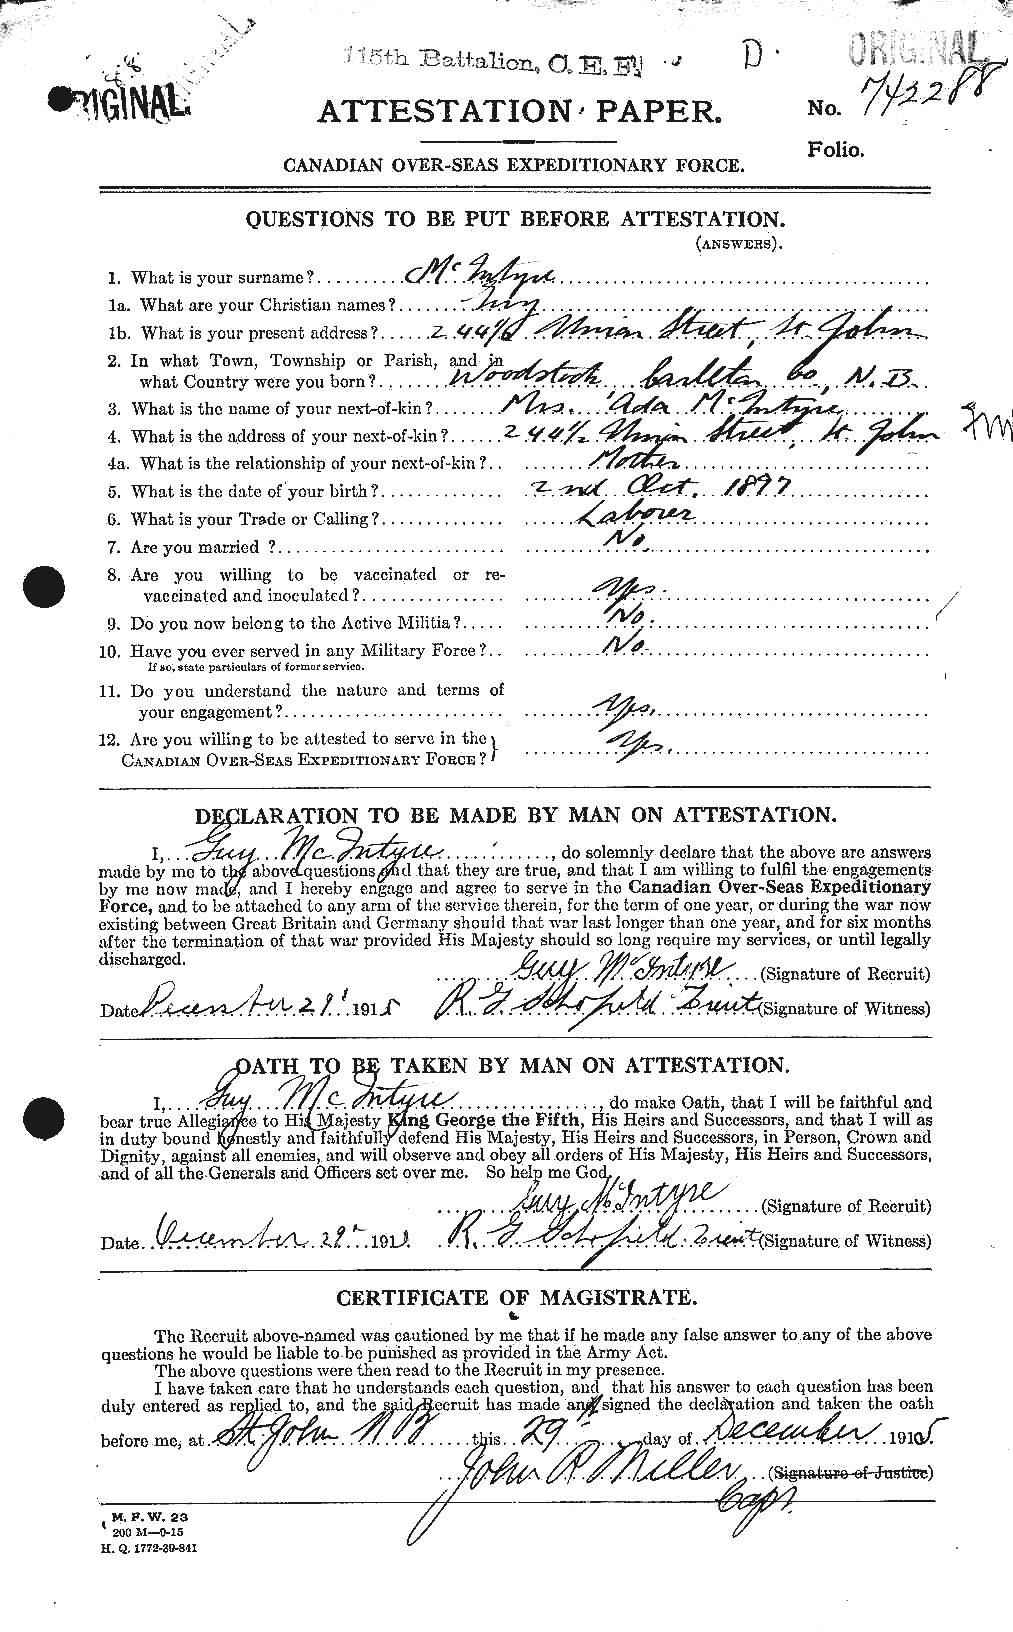 Dossiers du Personnel de la Première Guerre mondiale - CEC 527402a